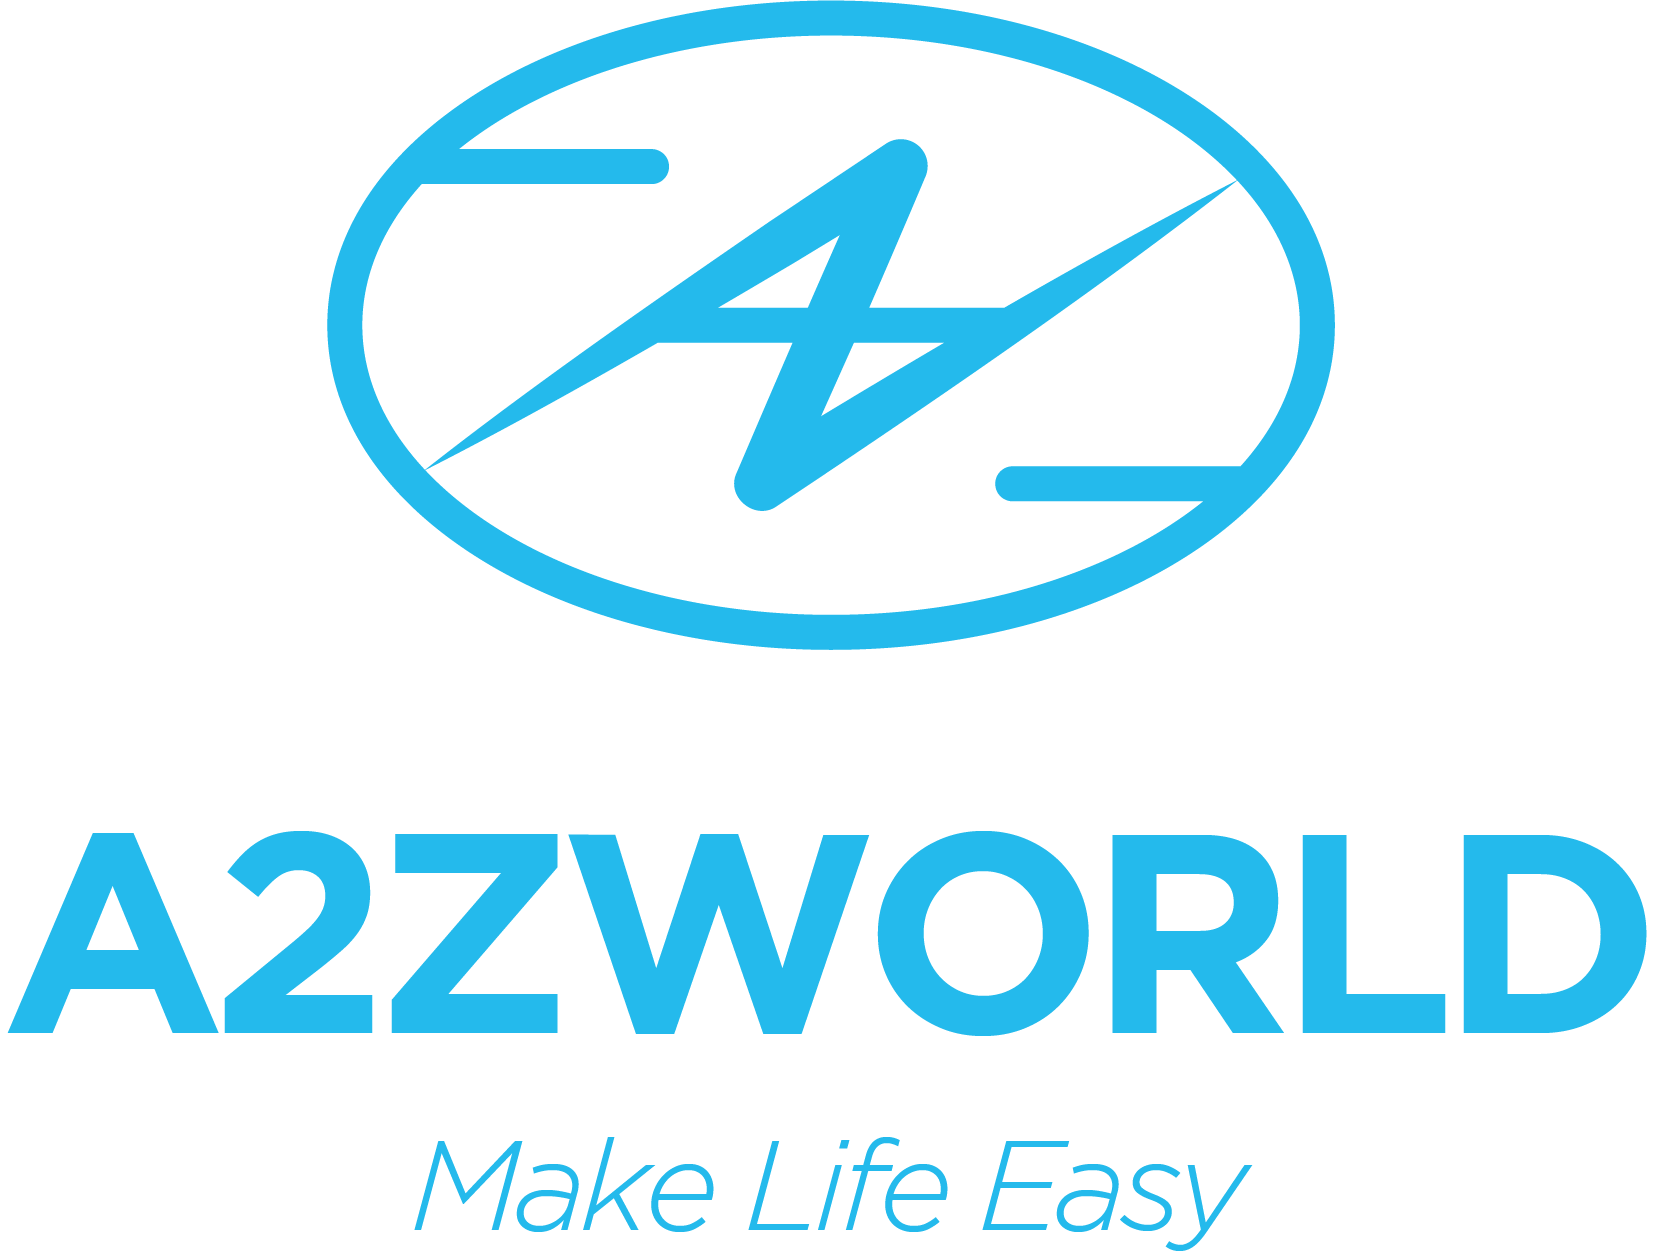 A2ZWORLD.COM